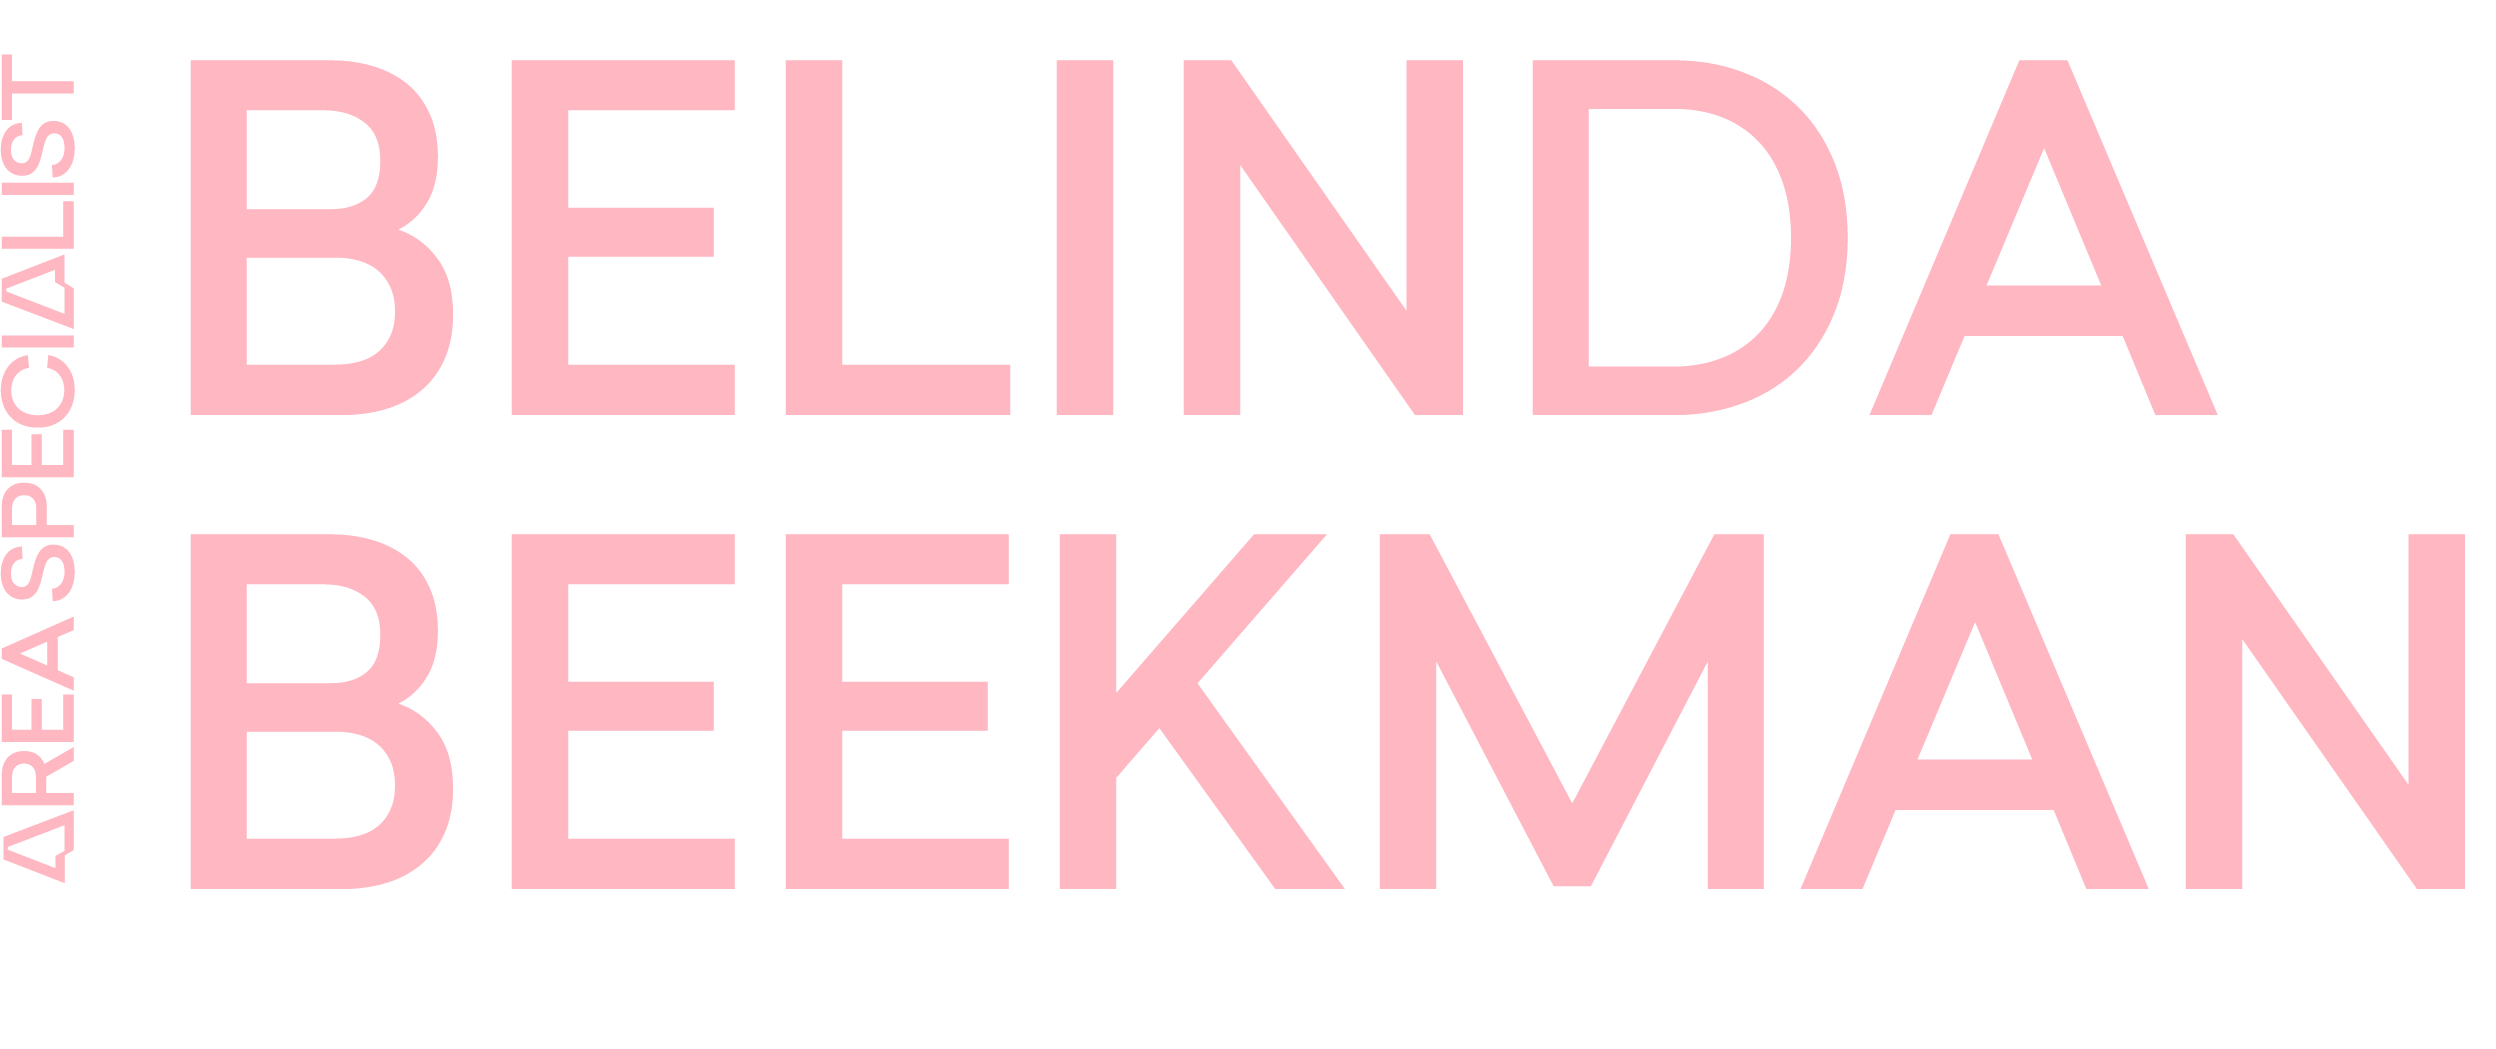 Belinda's logo